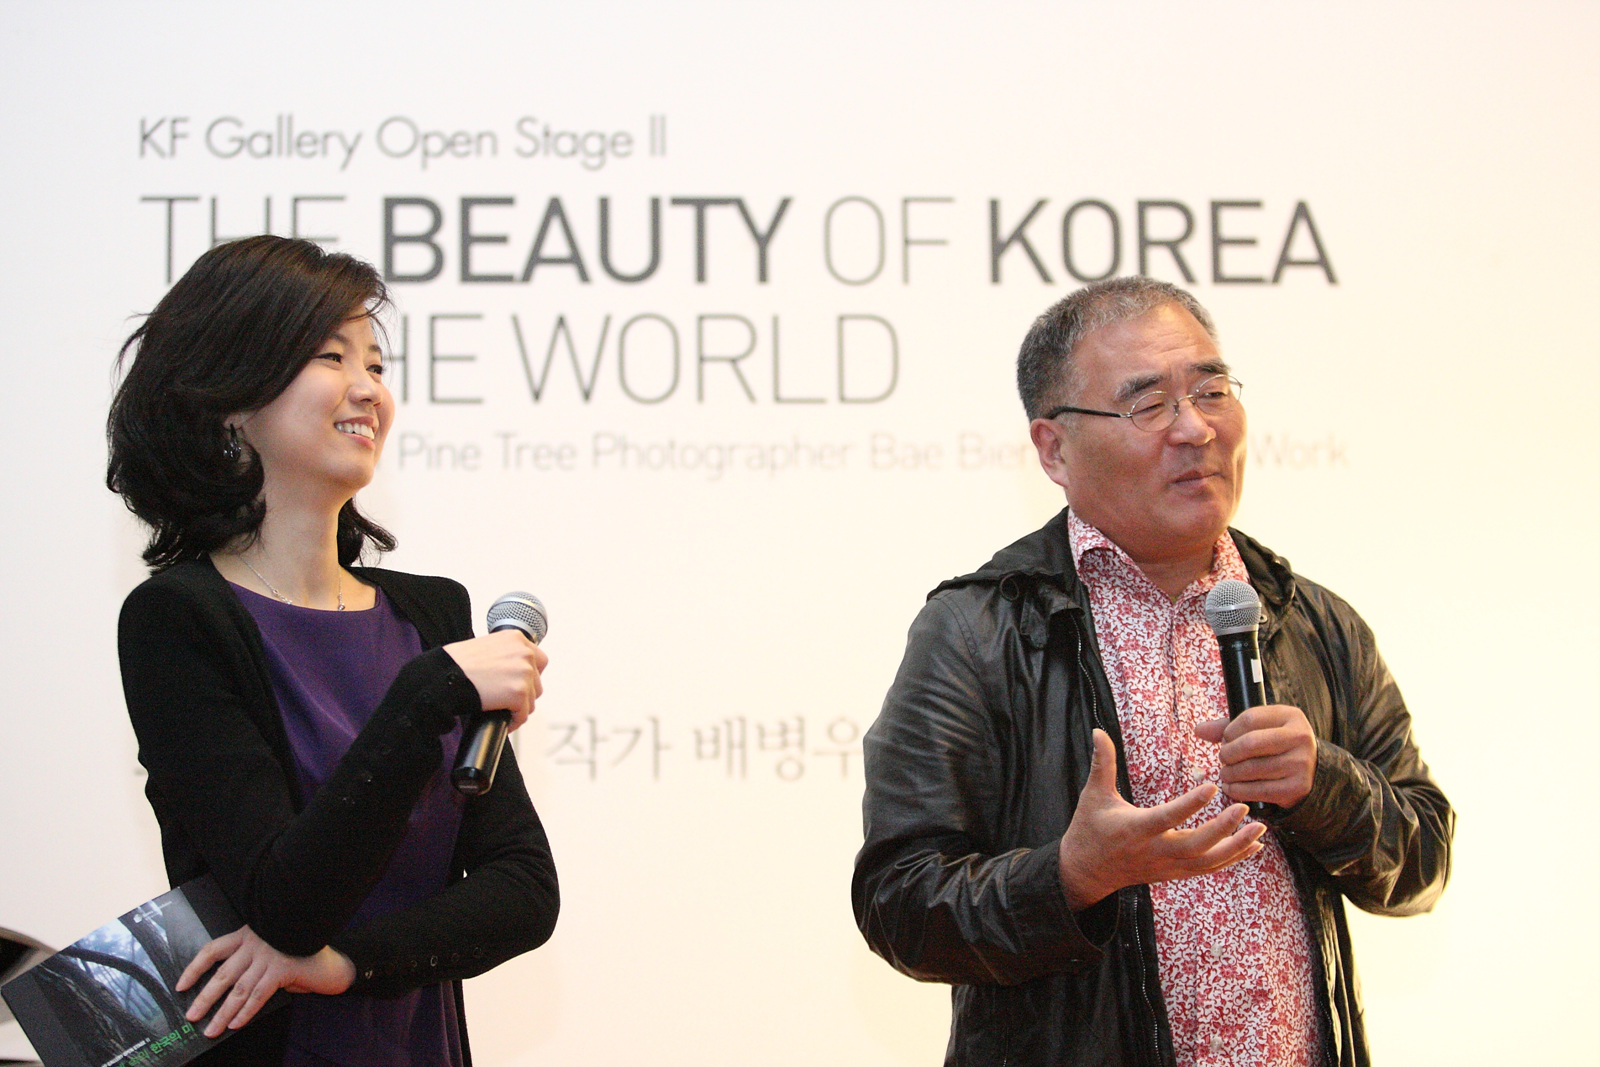 세계속의 한국의 미·소나무의 사진작가 배병우와 그의 작품세계